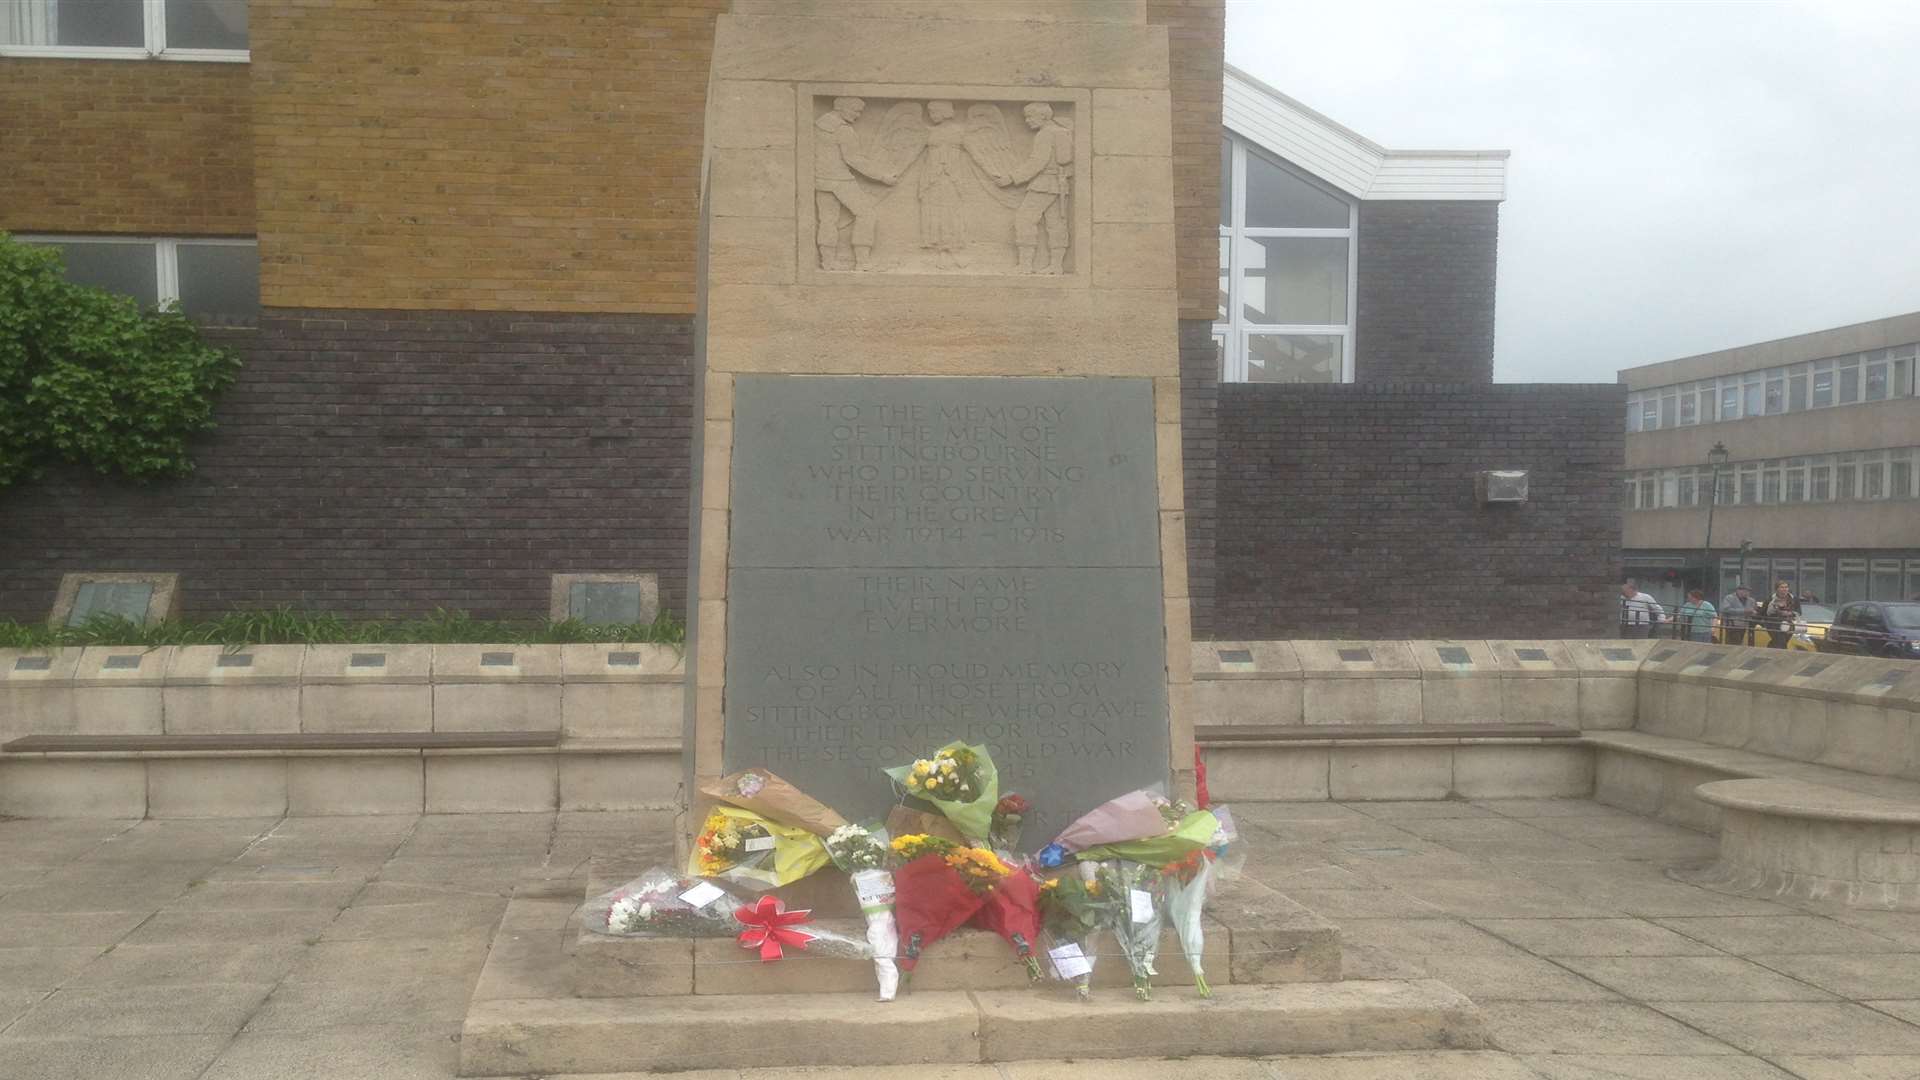 Flowers have been left on Sittingbourne's war memorial in memory of slain soldier Lee Rigby who was killed last week.